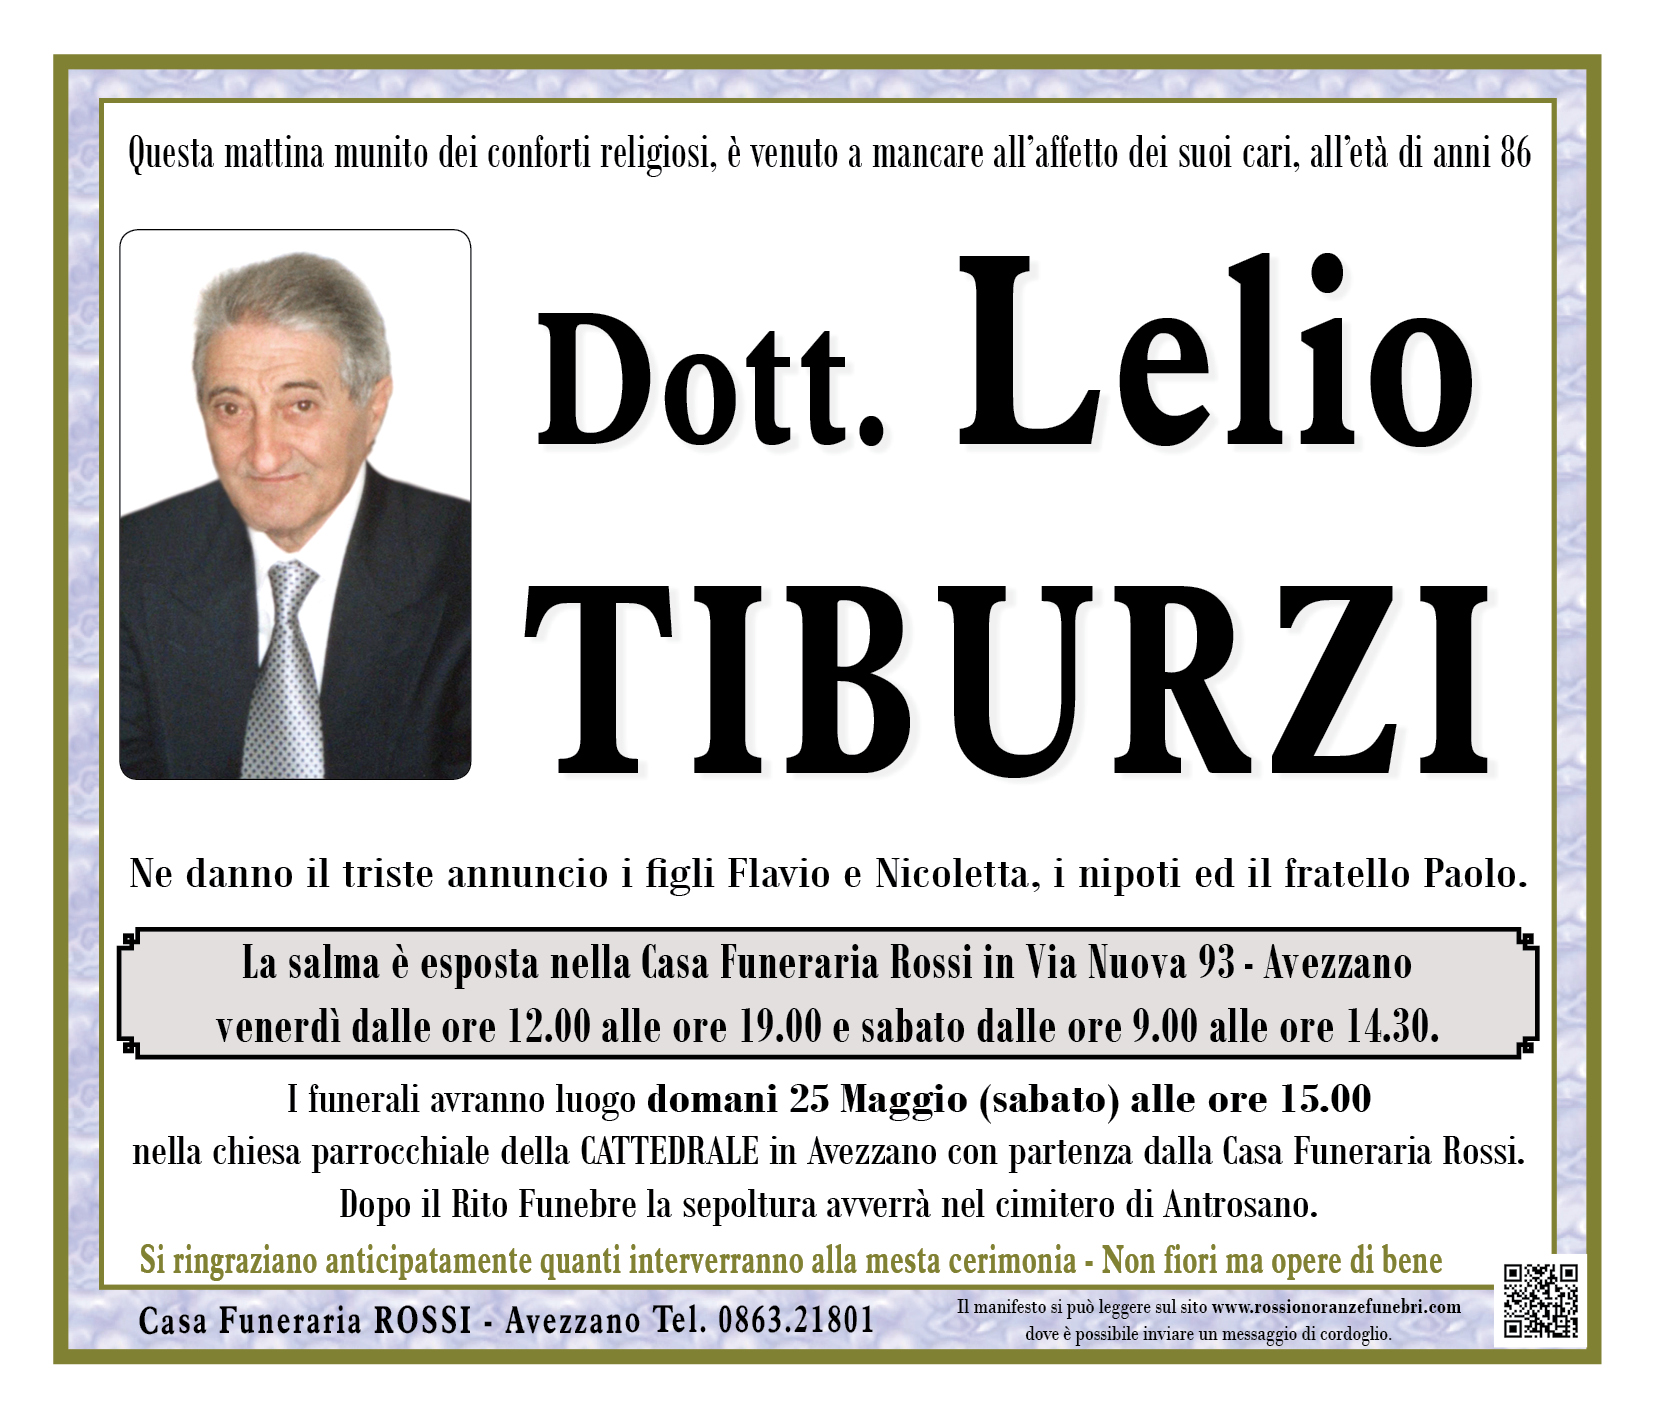 Dott. Lelio Tiburzi